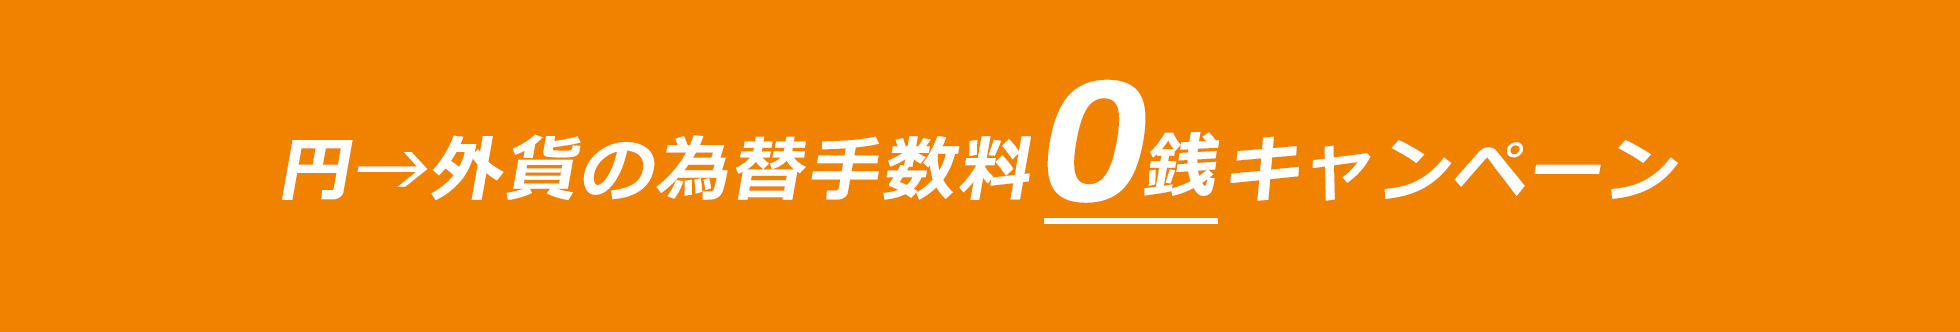 円→外貨の為替手数料0銭キャンペーン